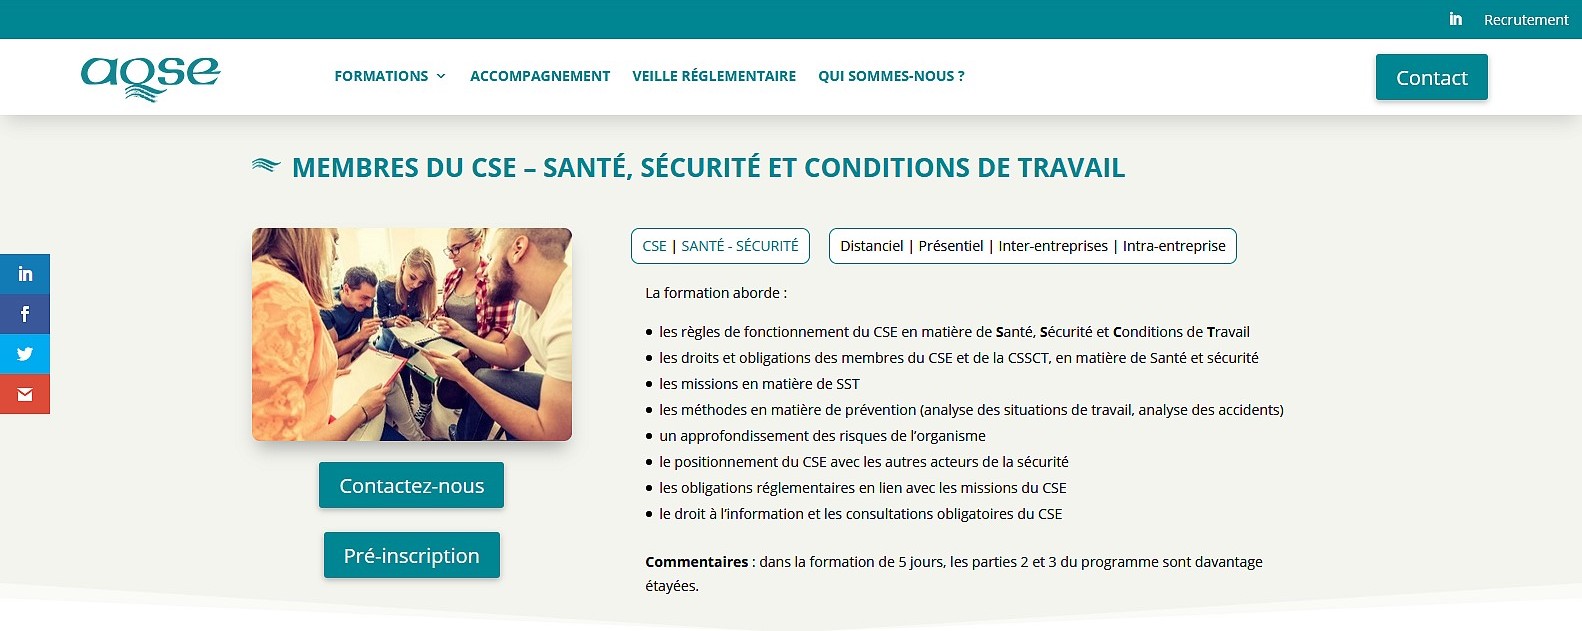 aqse-france.fr page formation CSE et pnibilit au travail - La formation prvention de la pnibilit